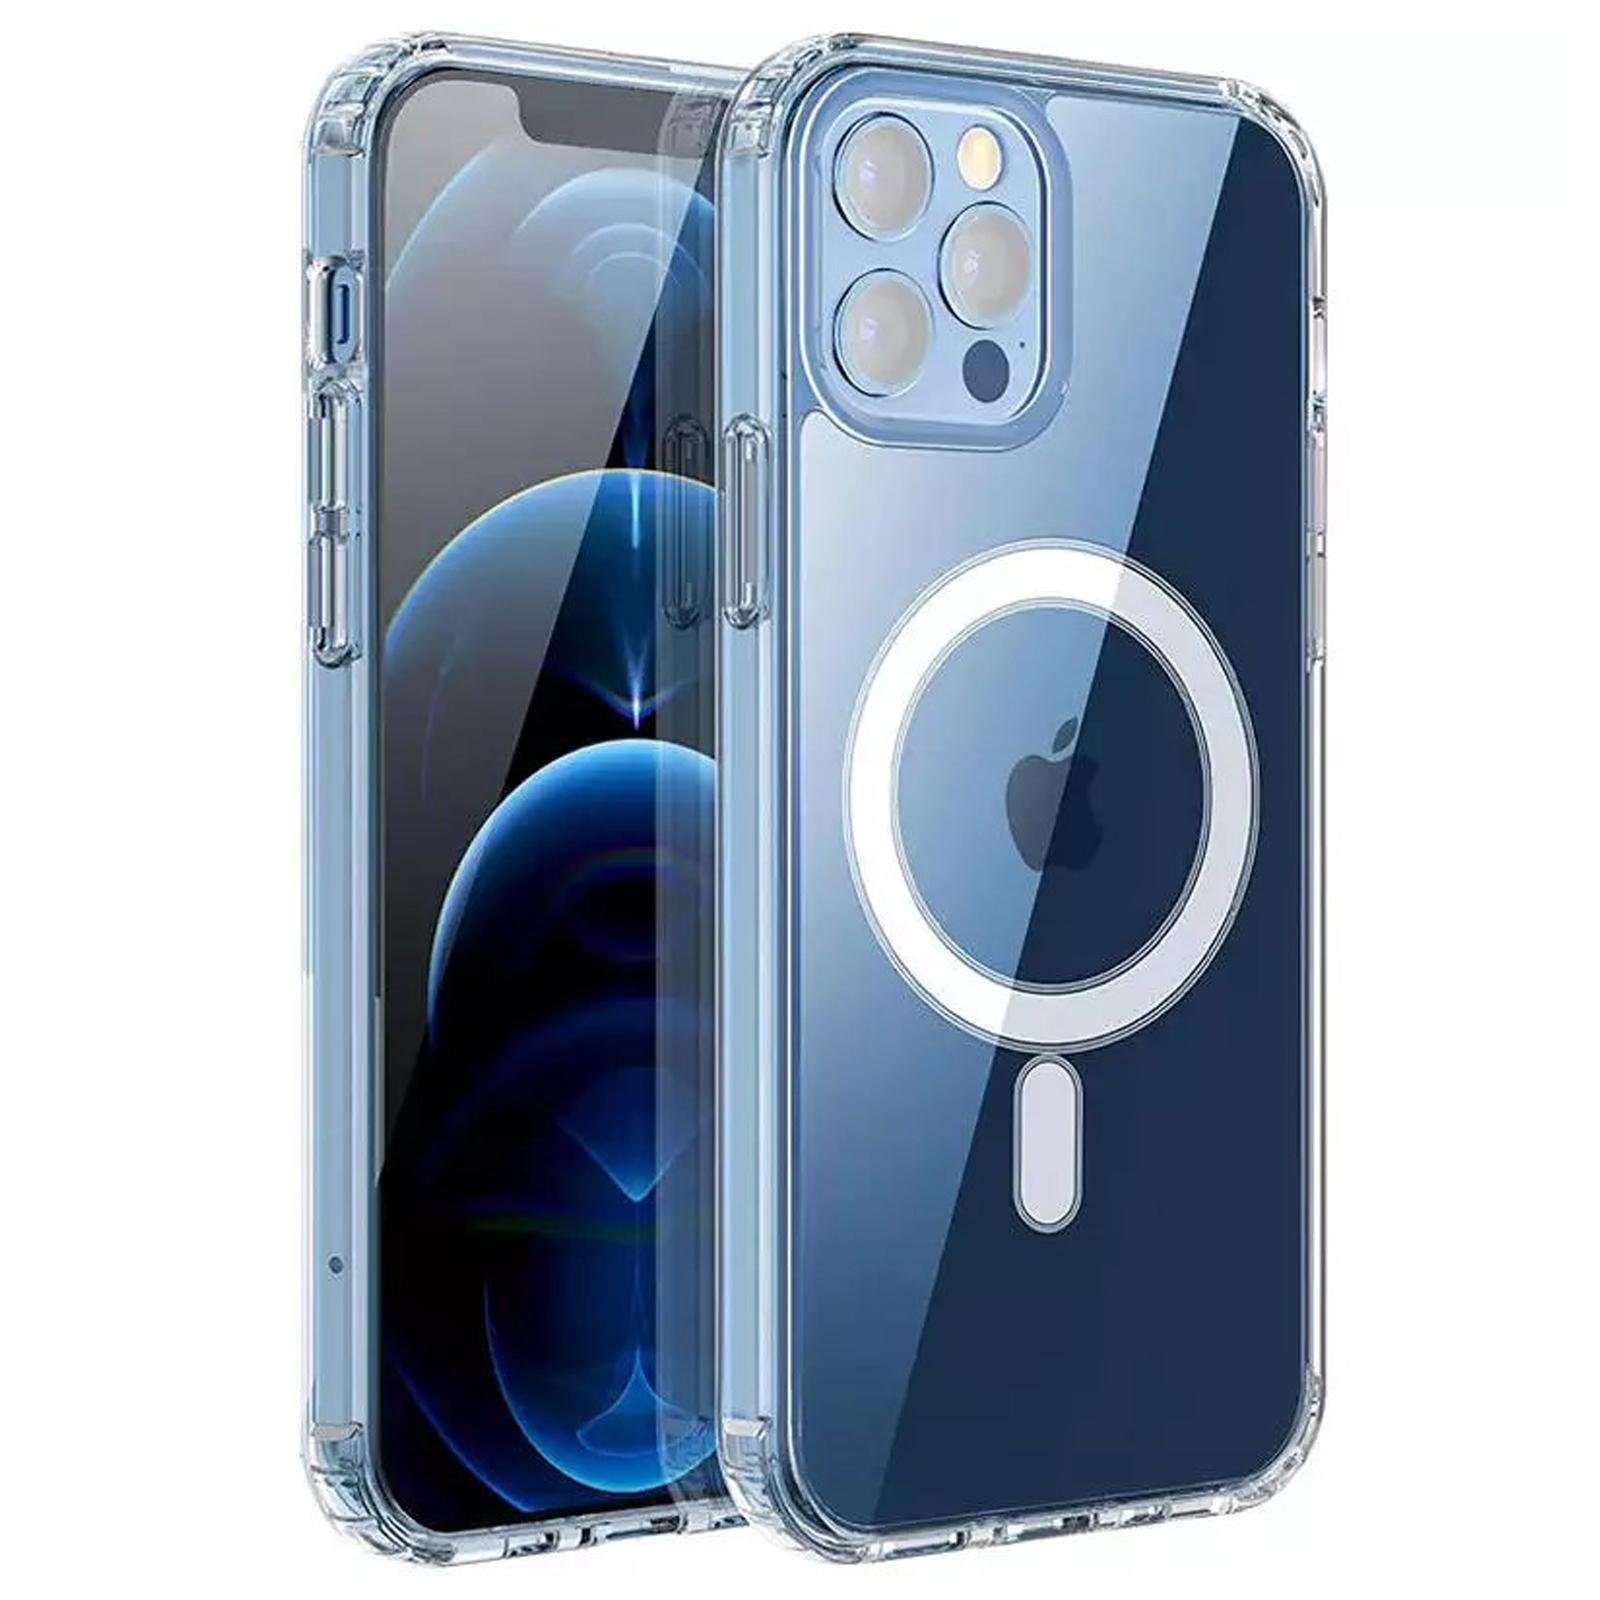 Numerva Smartphone-Hülle Silikon Case für Apple iPhone 11, Transparente  Schutzhülle Bumper Case MagSafe kompatibel